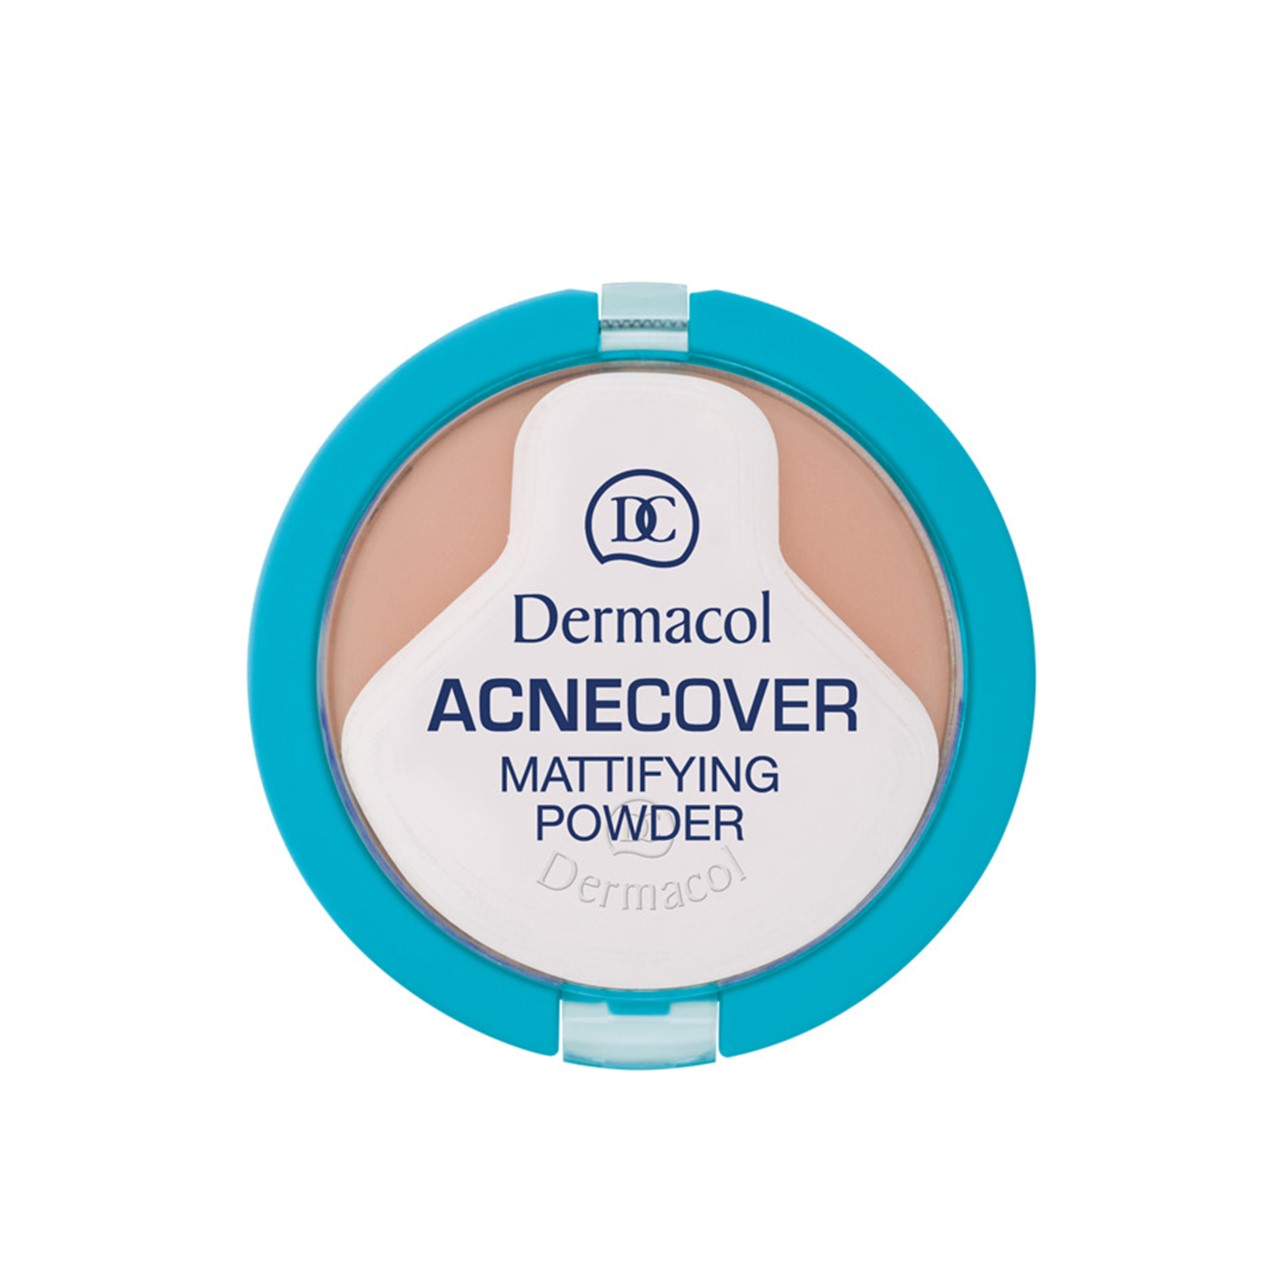 Dermacol Acnecover Mattifying Powder 02 Shell 11g (0.39oz)